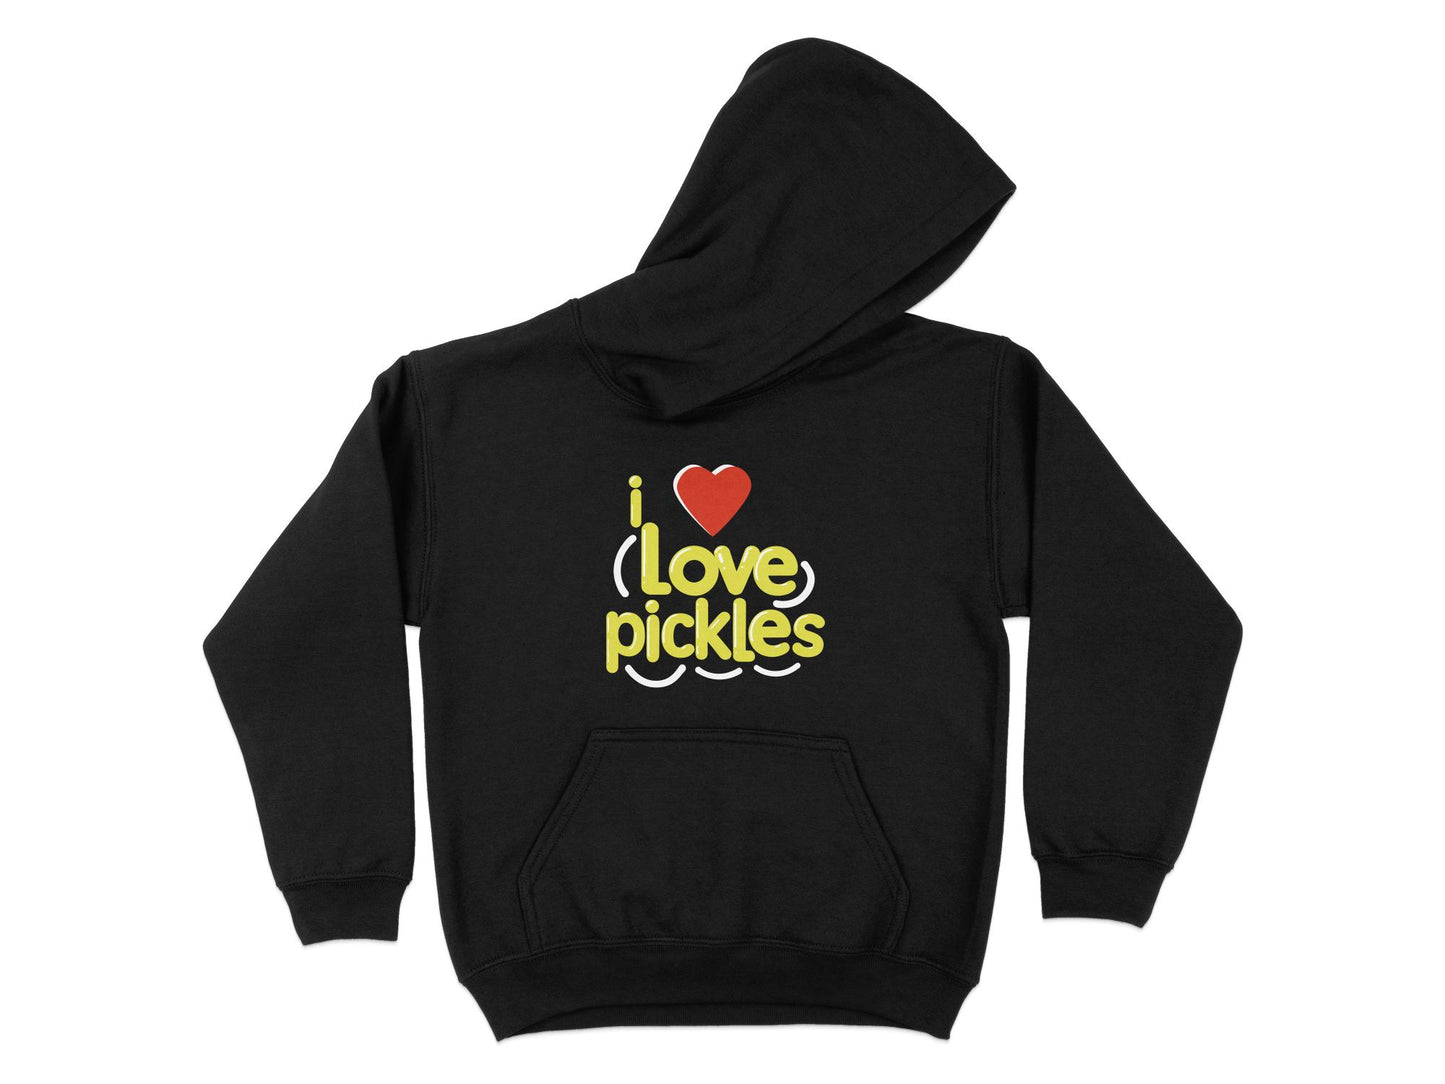 I Love Pickles Hoodie, black